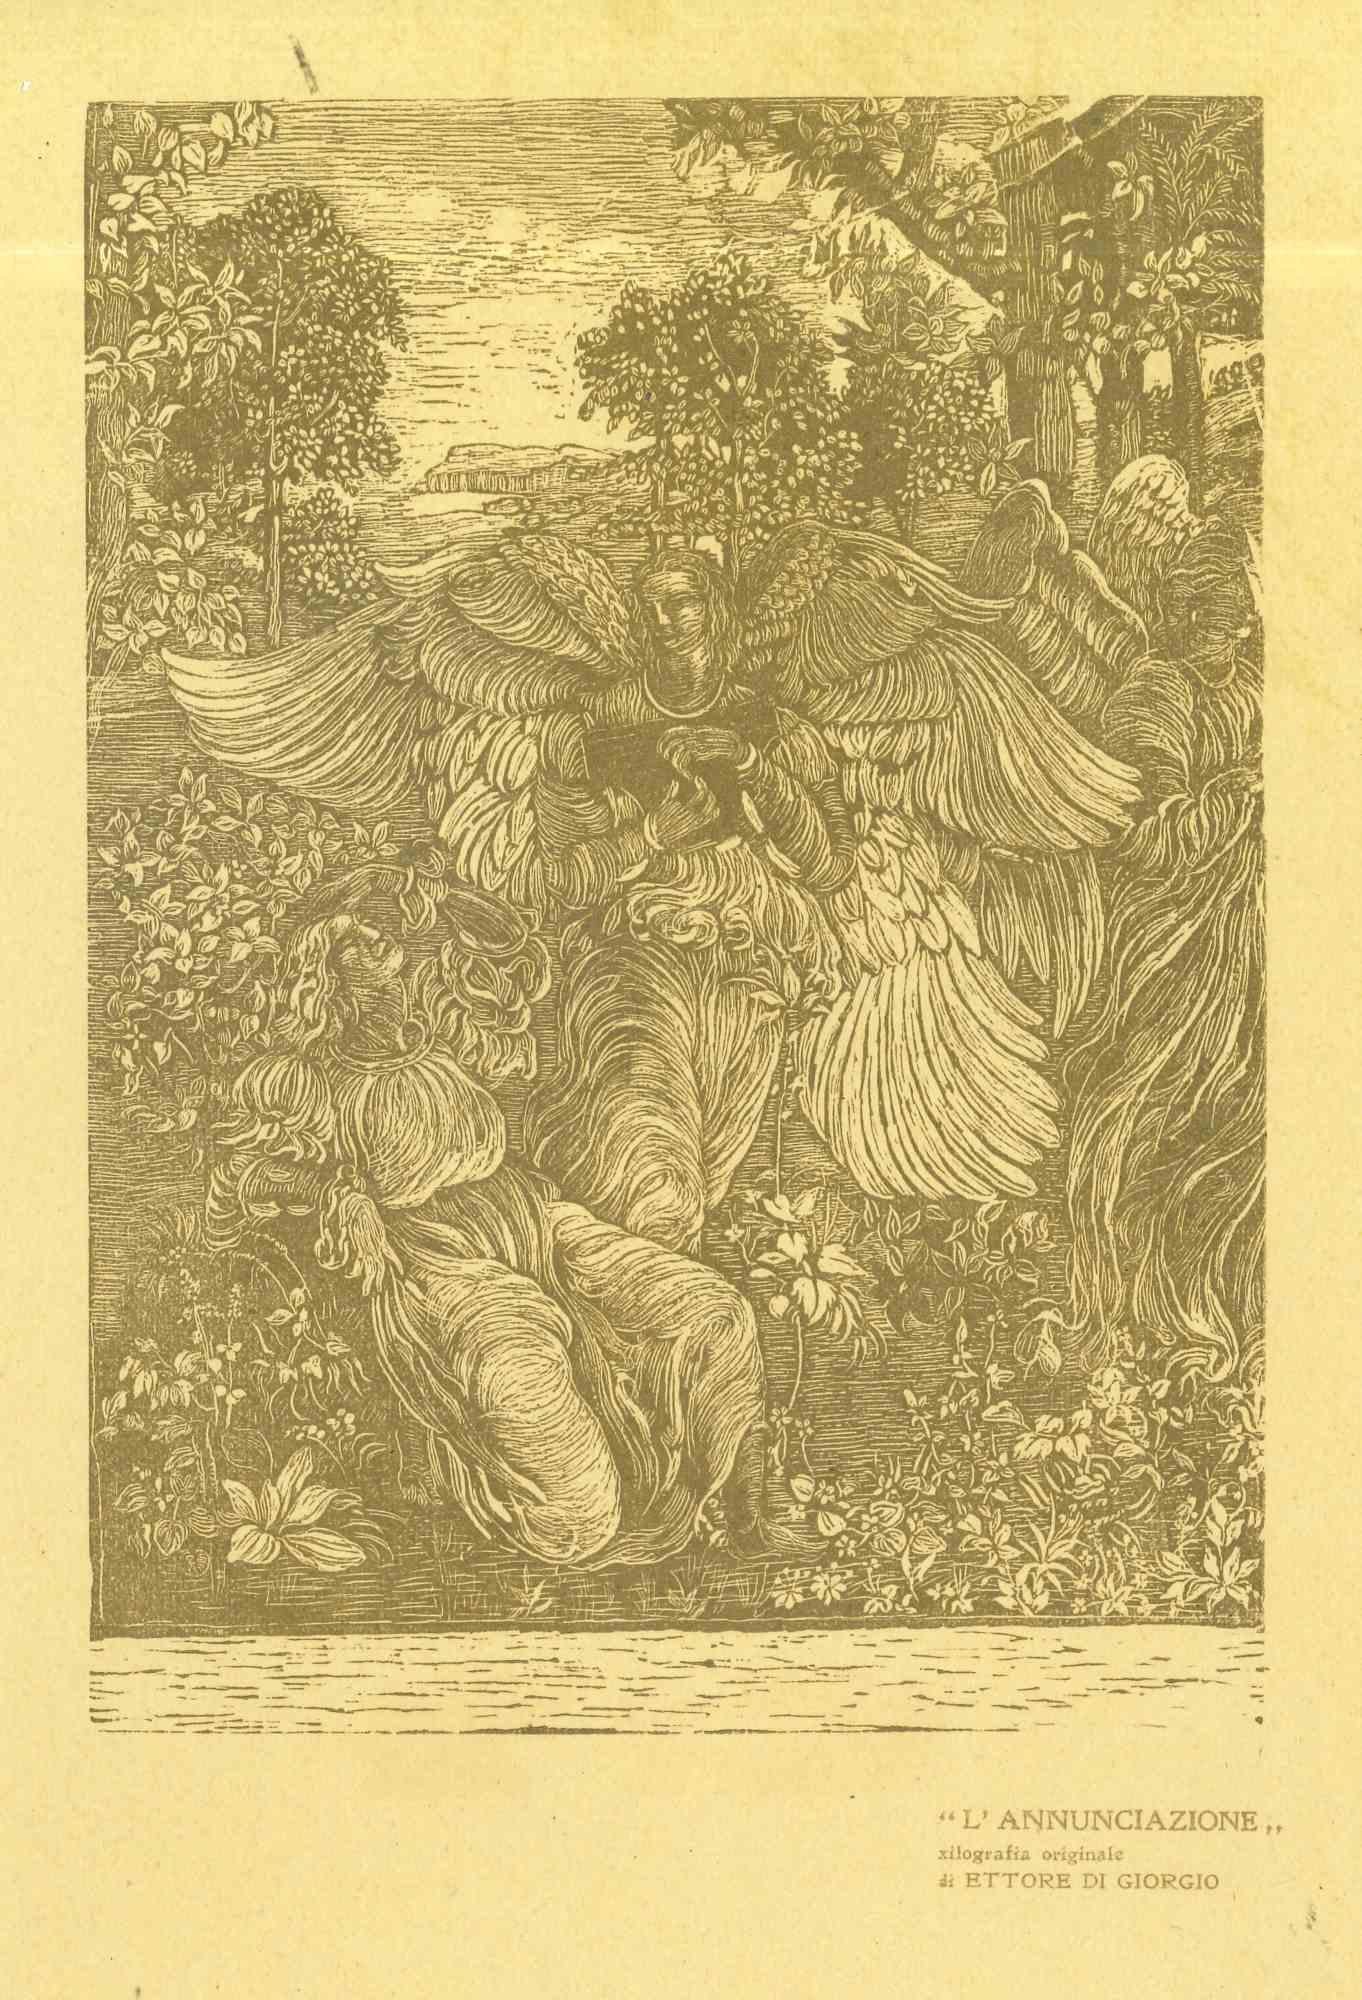 Unknown Figurative Print - Annunciation - Original Woodcut by Ettore di Giorgio - Early 20th Century